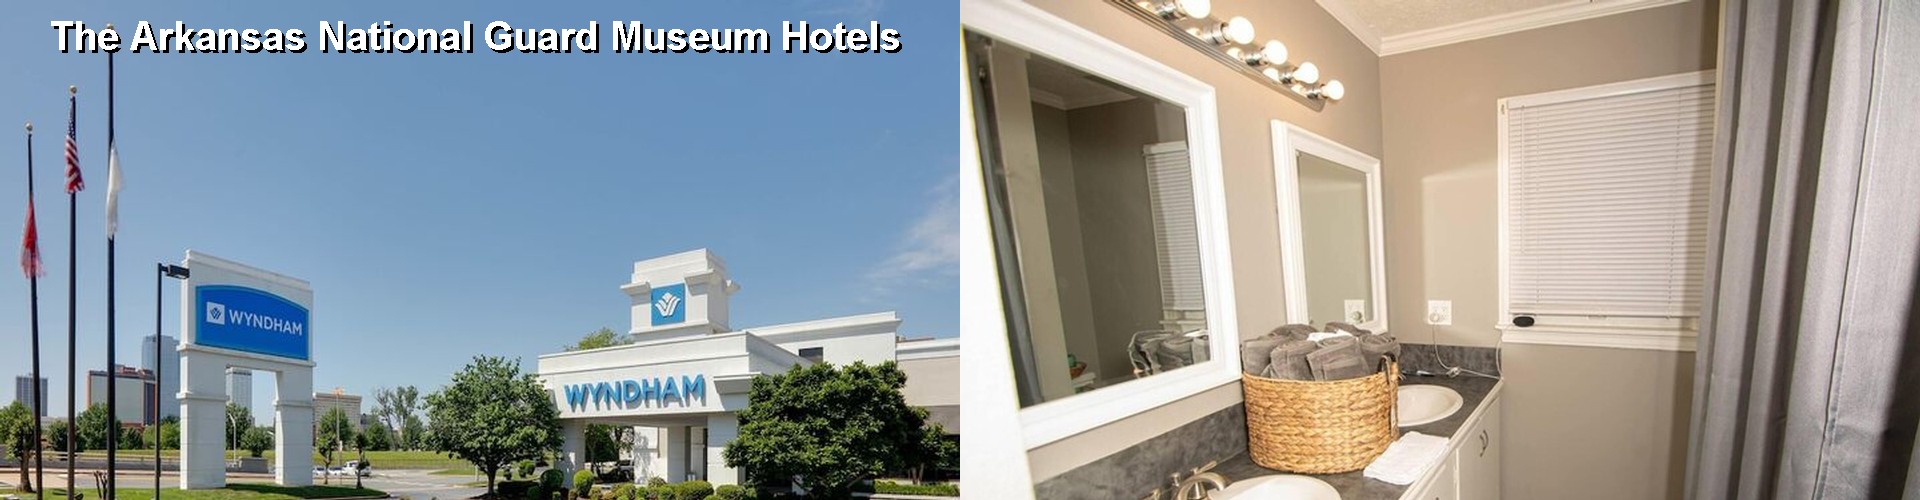 4 Best Hotels near The Arkansas National Guard Museum